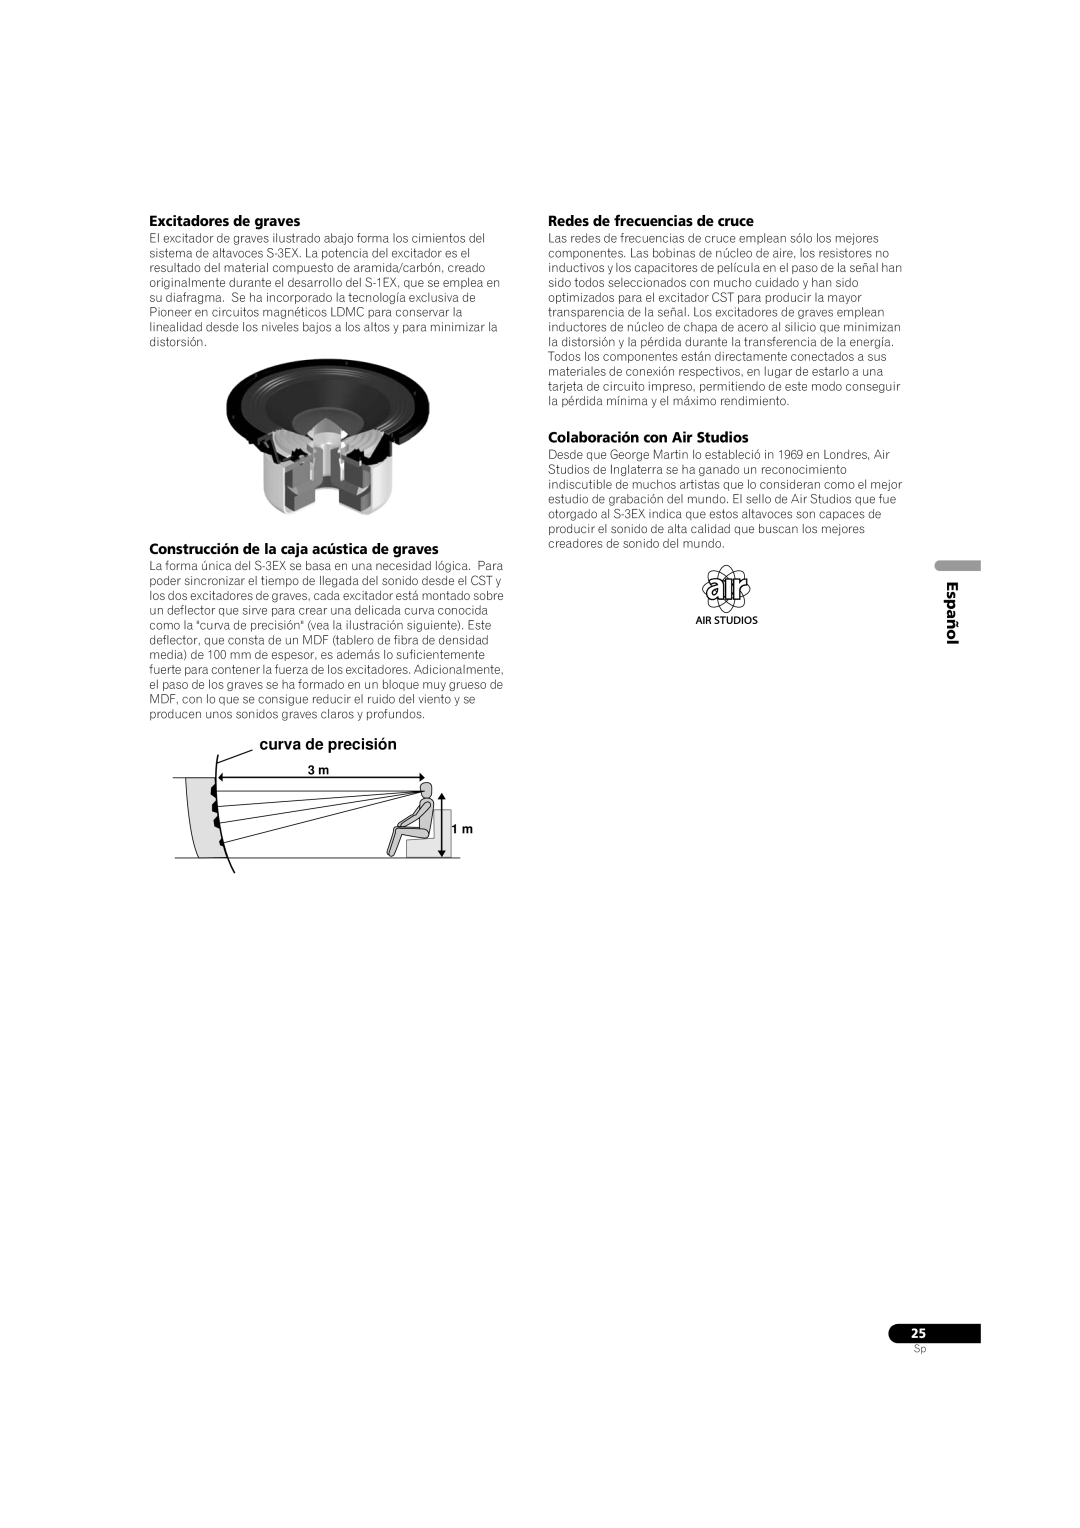 Pioneer S-3EX curva de precisión, Excitadores de graves, Construcción de la caja acústica de graves, Español, 3 m 1 m 